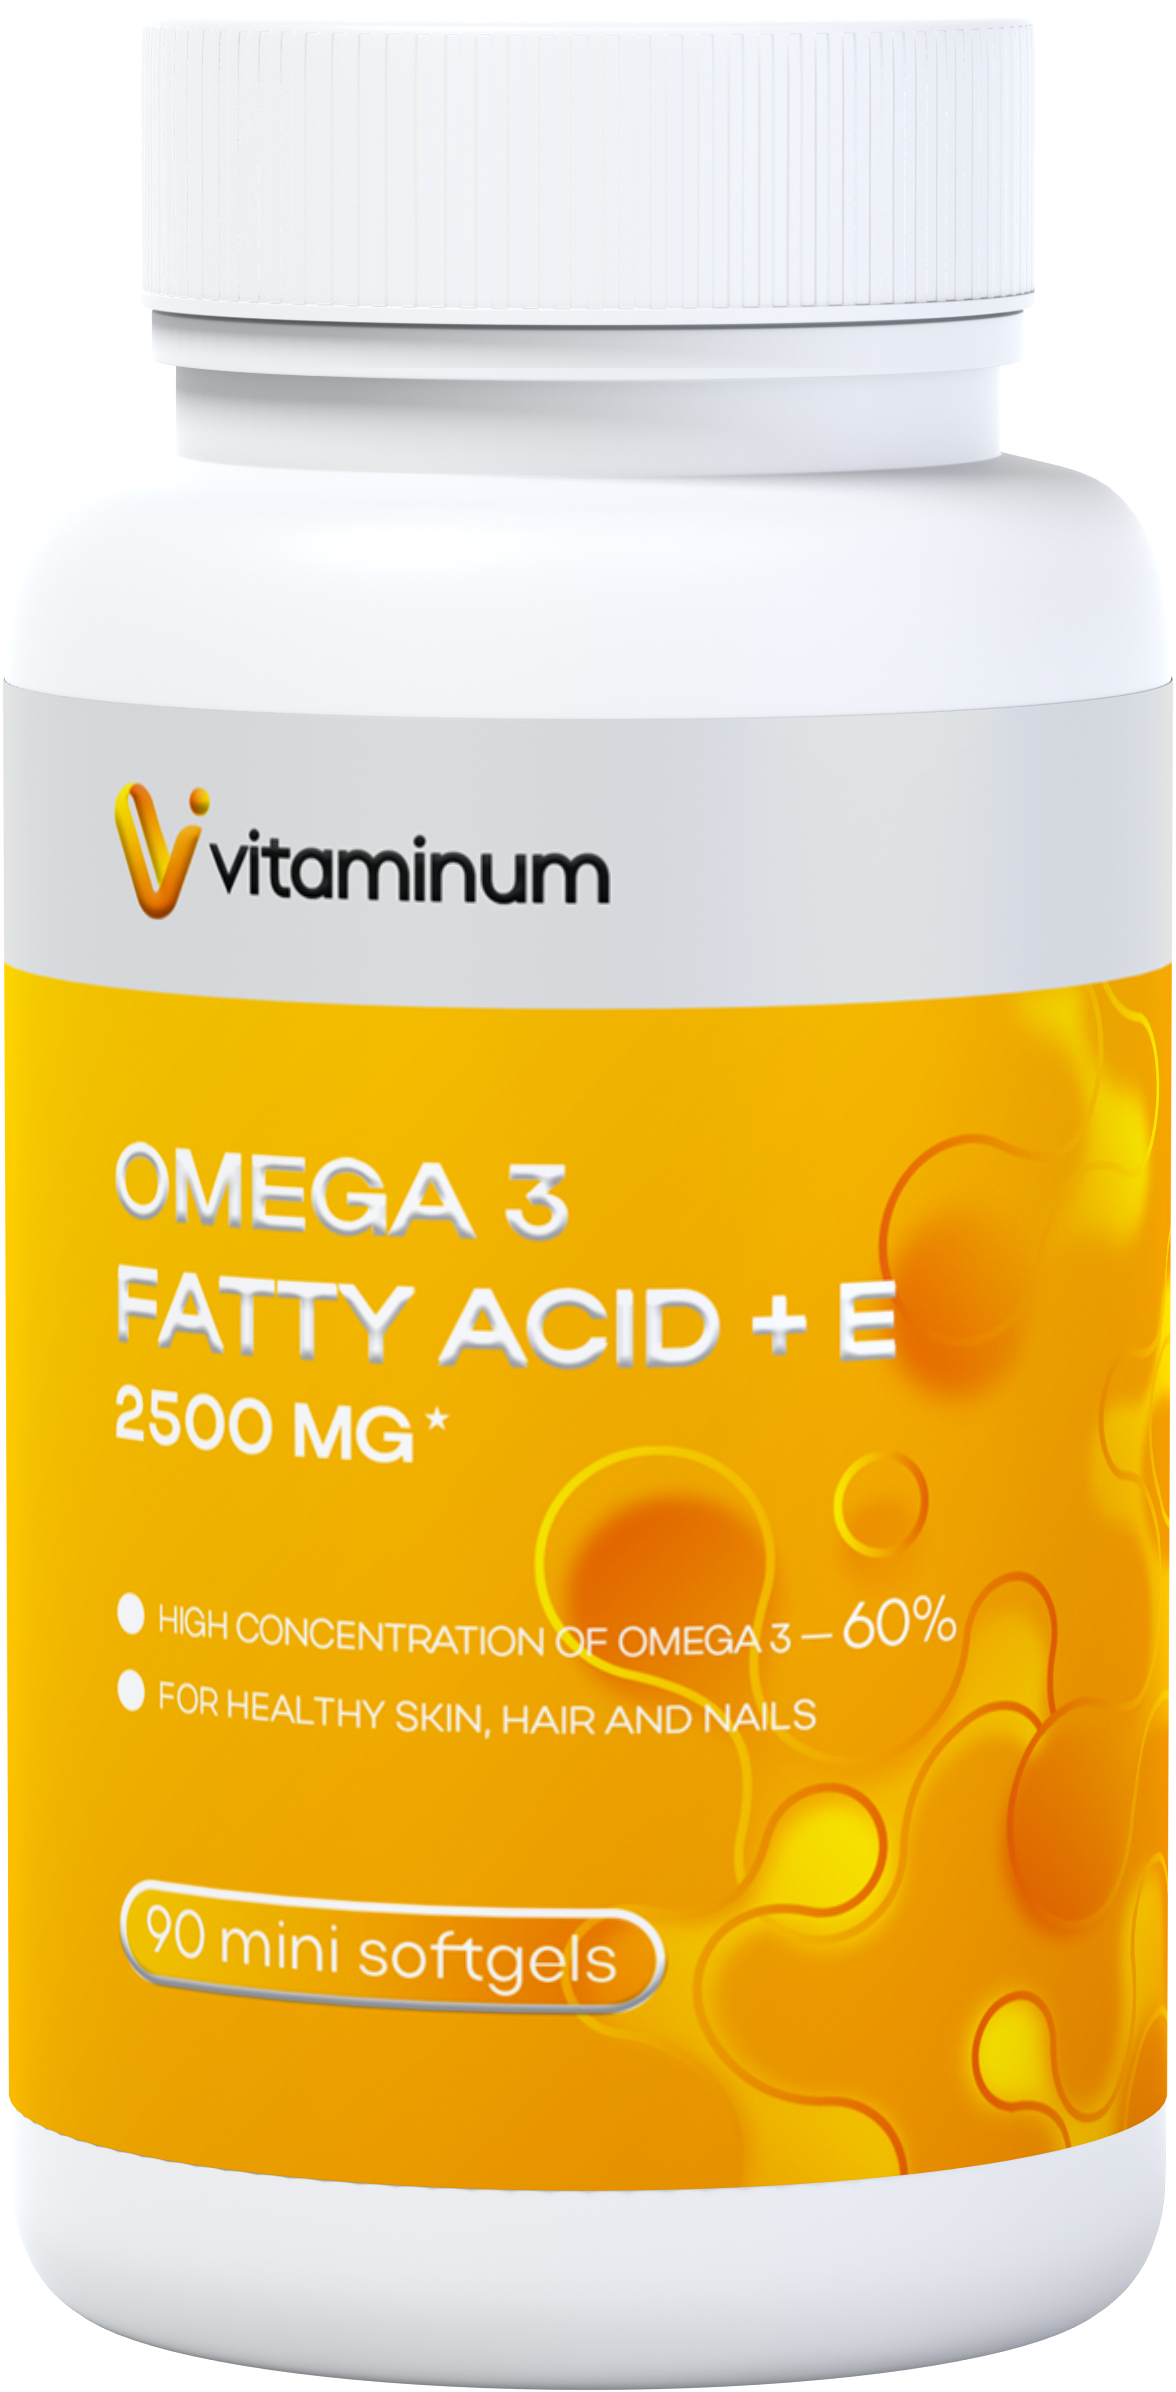  Vitaminum ОМЕГА 3 60% + витамин Е (2500 MG*) 90 капсул 700 мг   в Иркутске